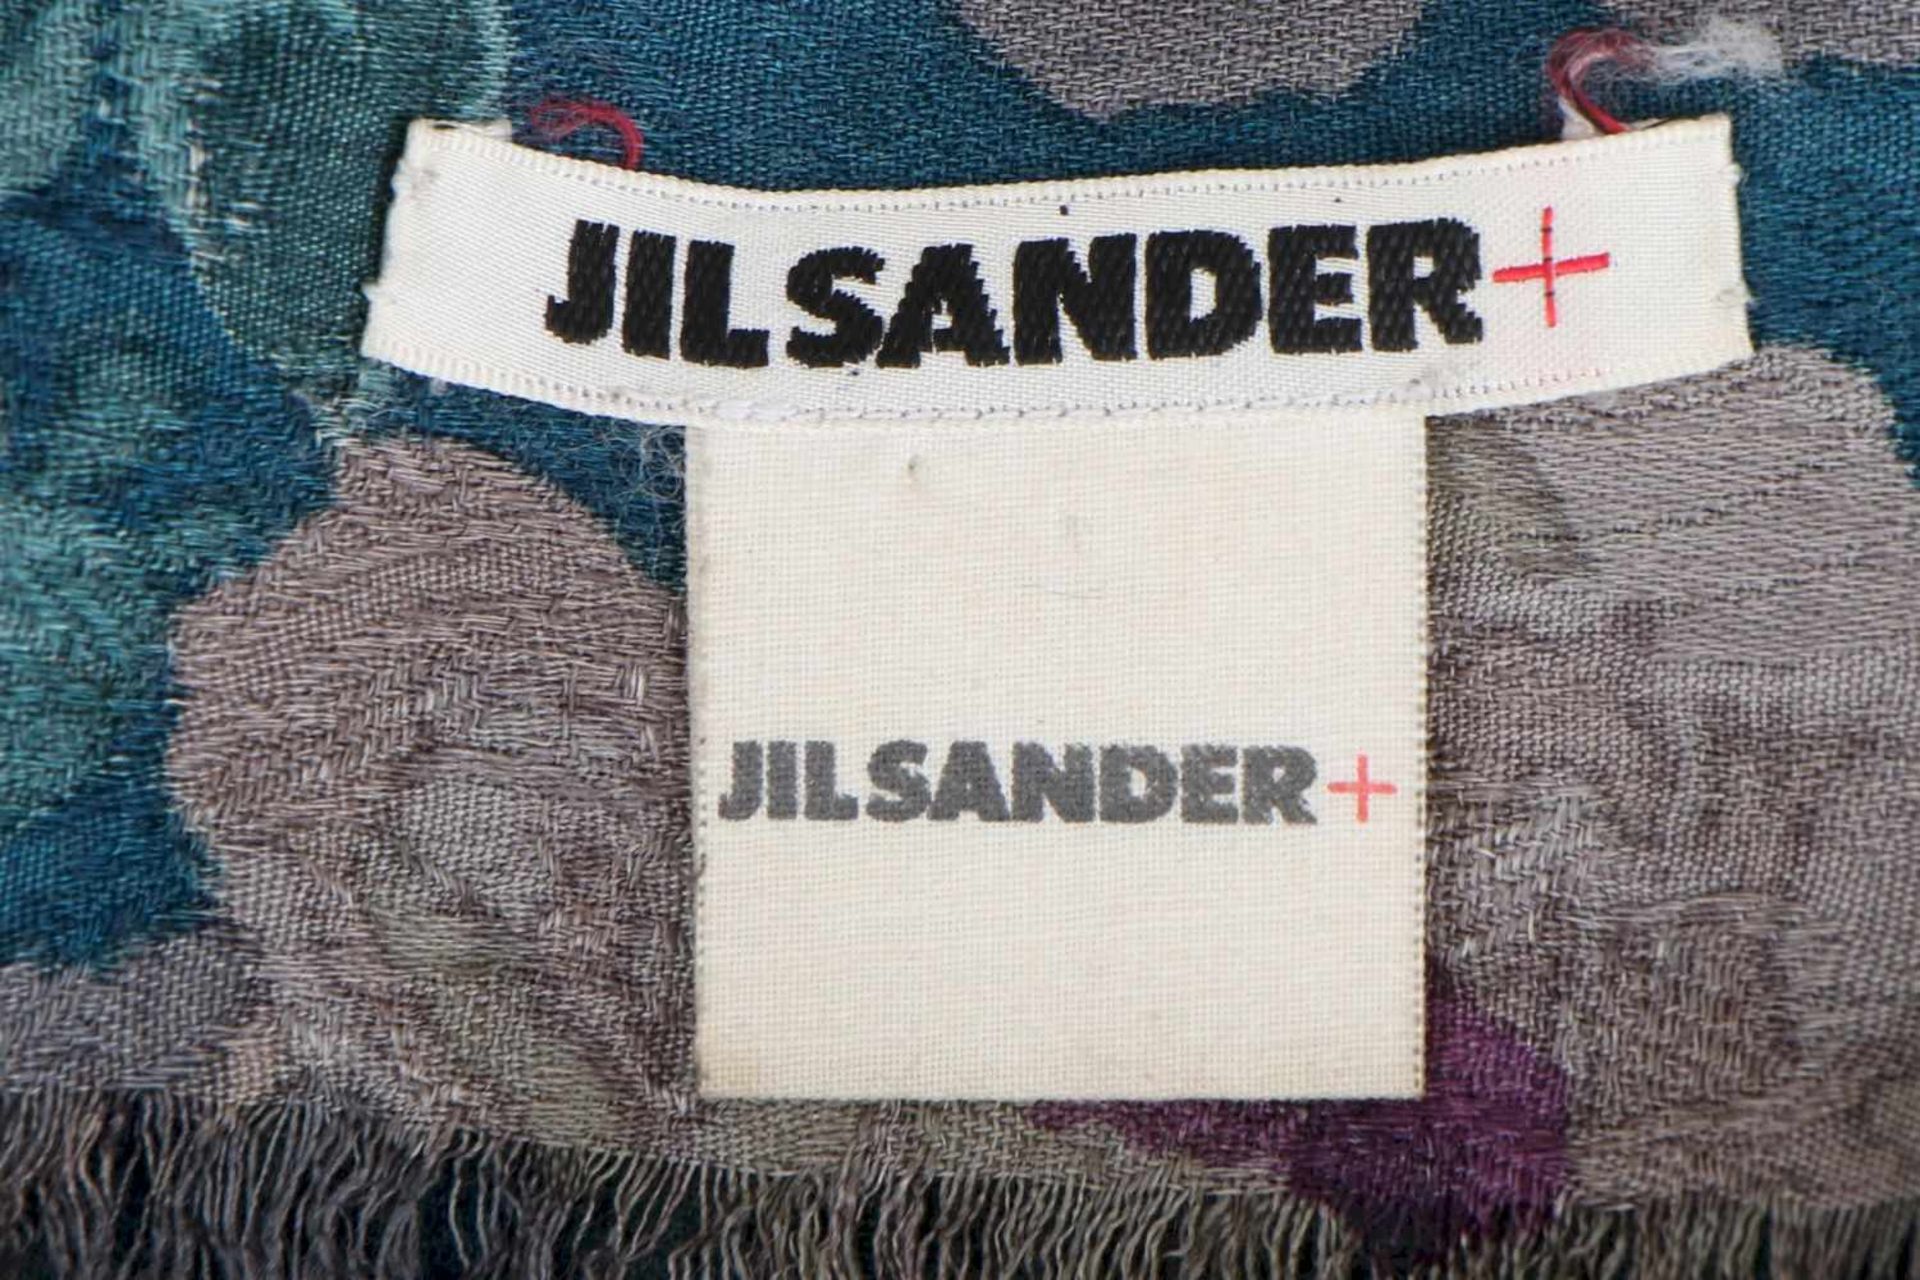 JIL SANDER Tasche und Tuchhellbraunes Leder, hochrechteckige Form mit Reißverschluss, 2 kurze - Bild 4 aus 6